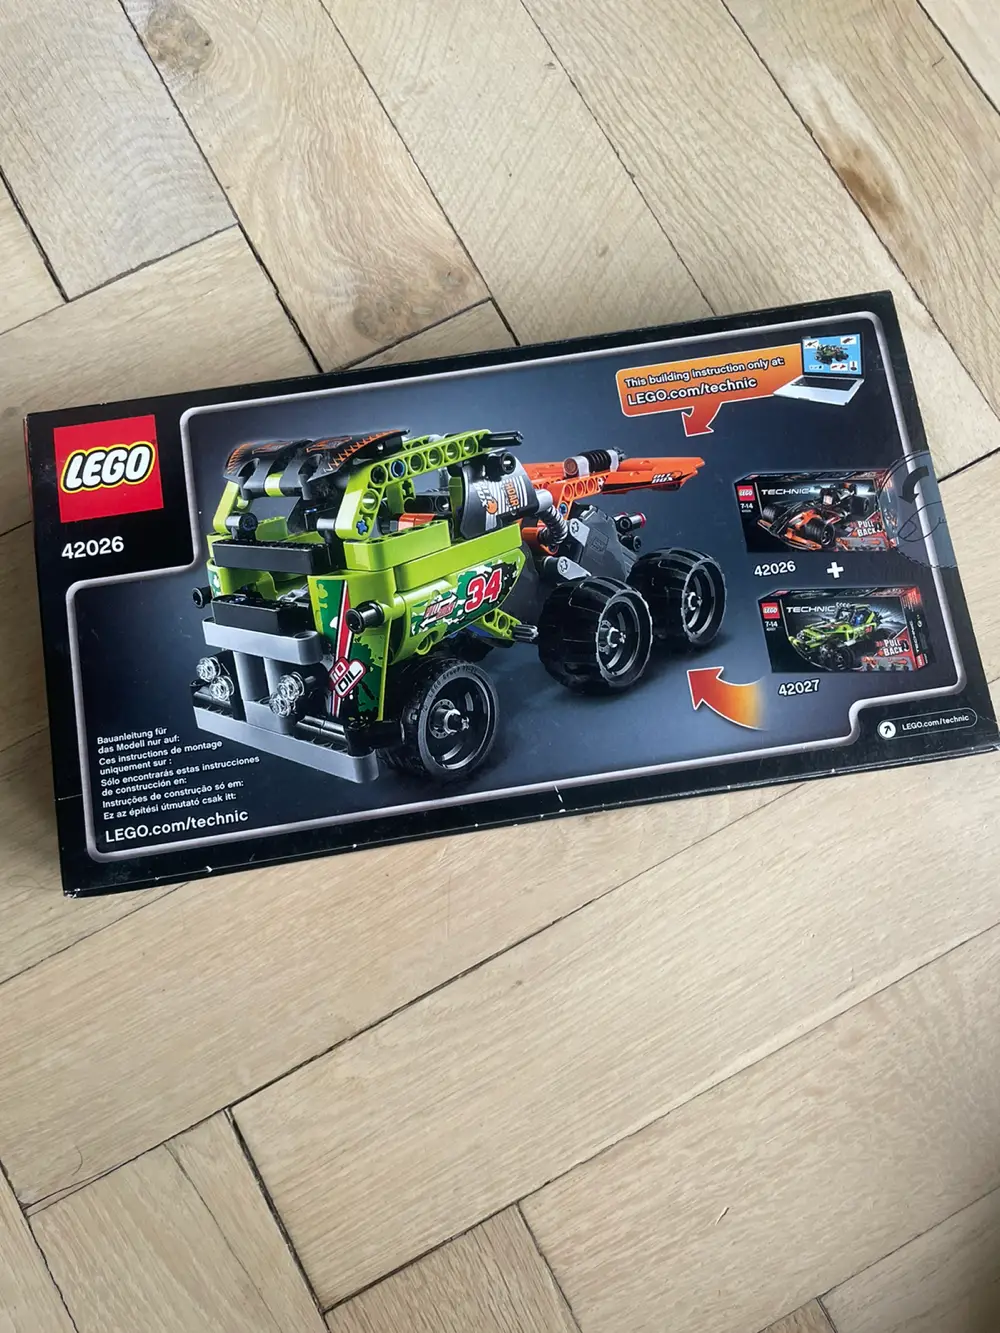 Køb Lego RC Racerbil 42065 af Camilla Holmstrøm på Reshopper · Shop secondhand til børn, mor bolig